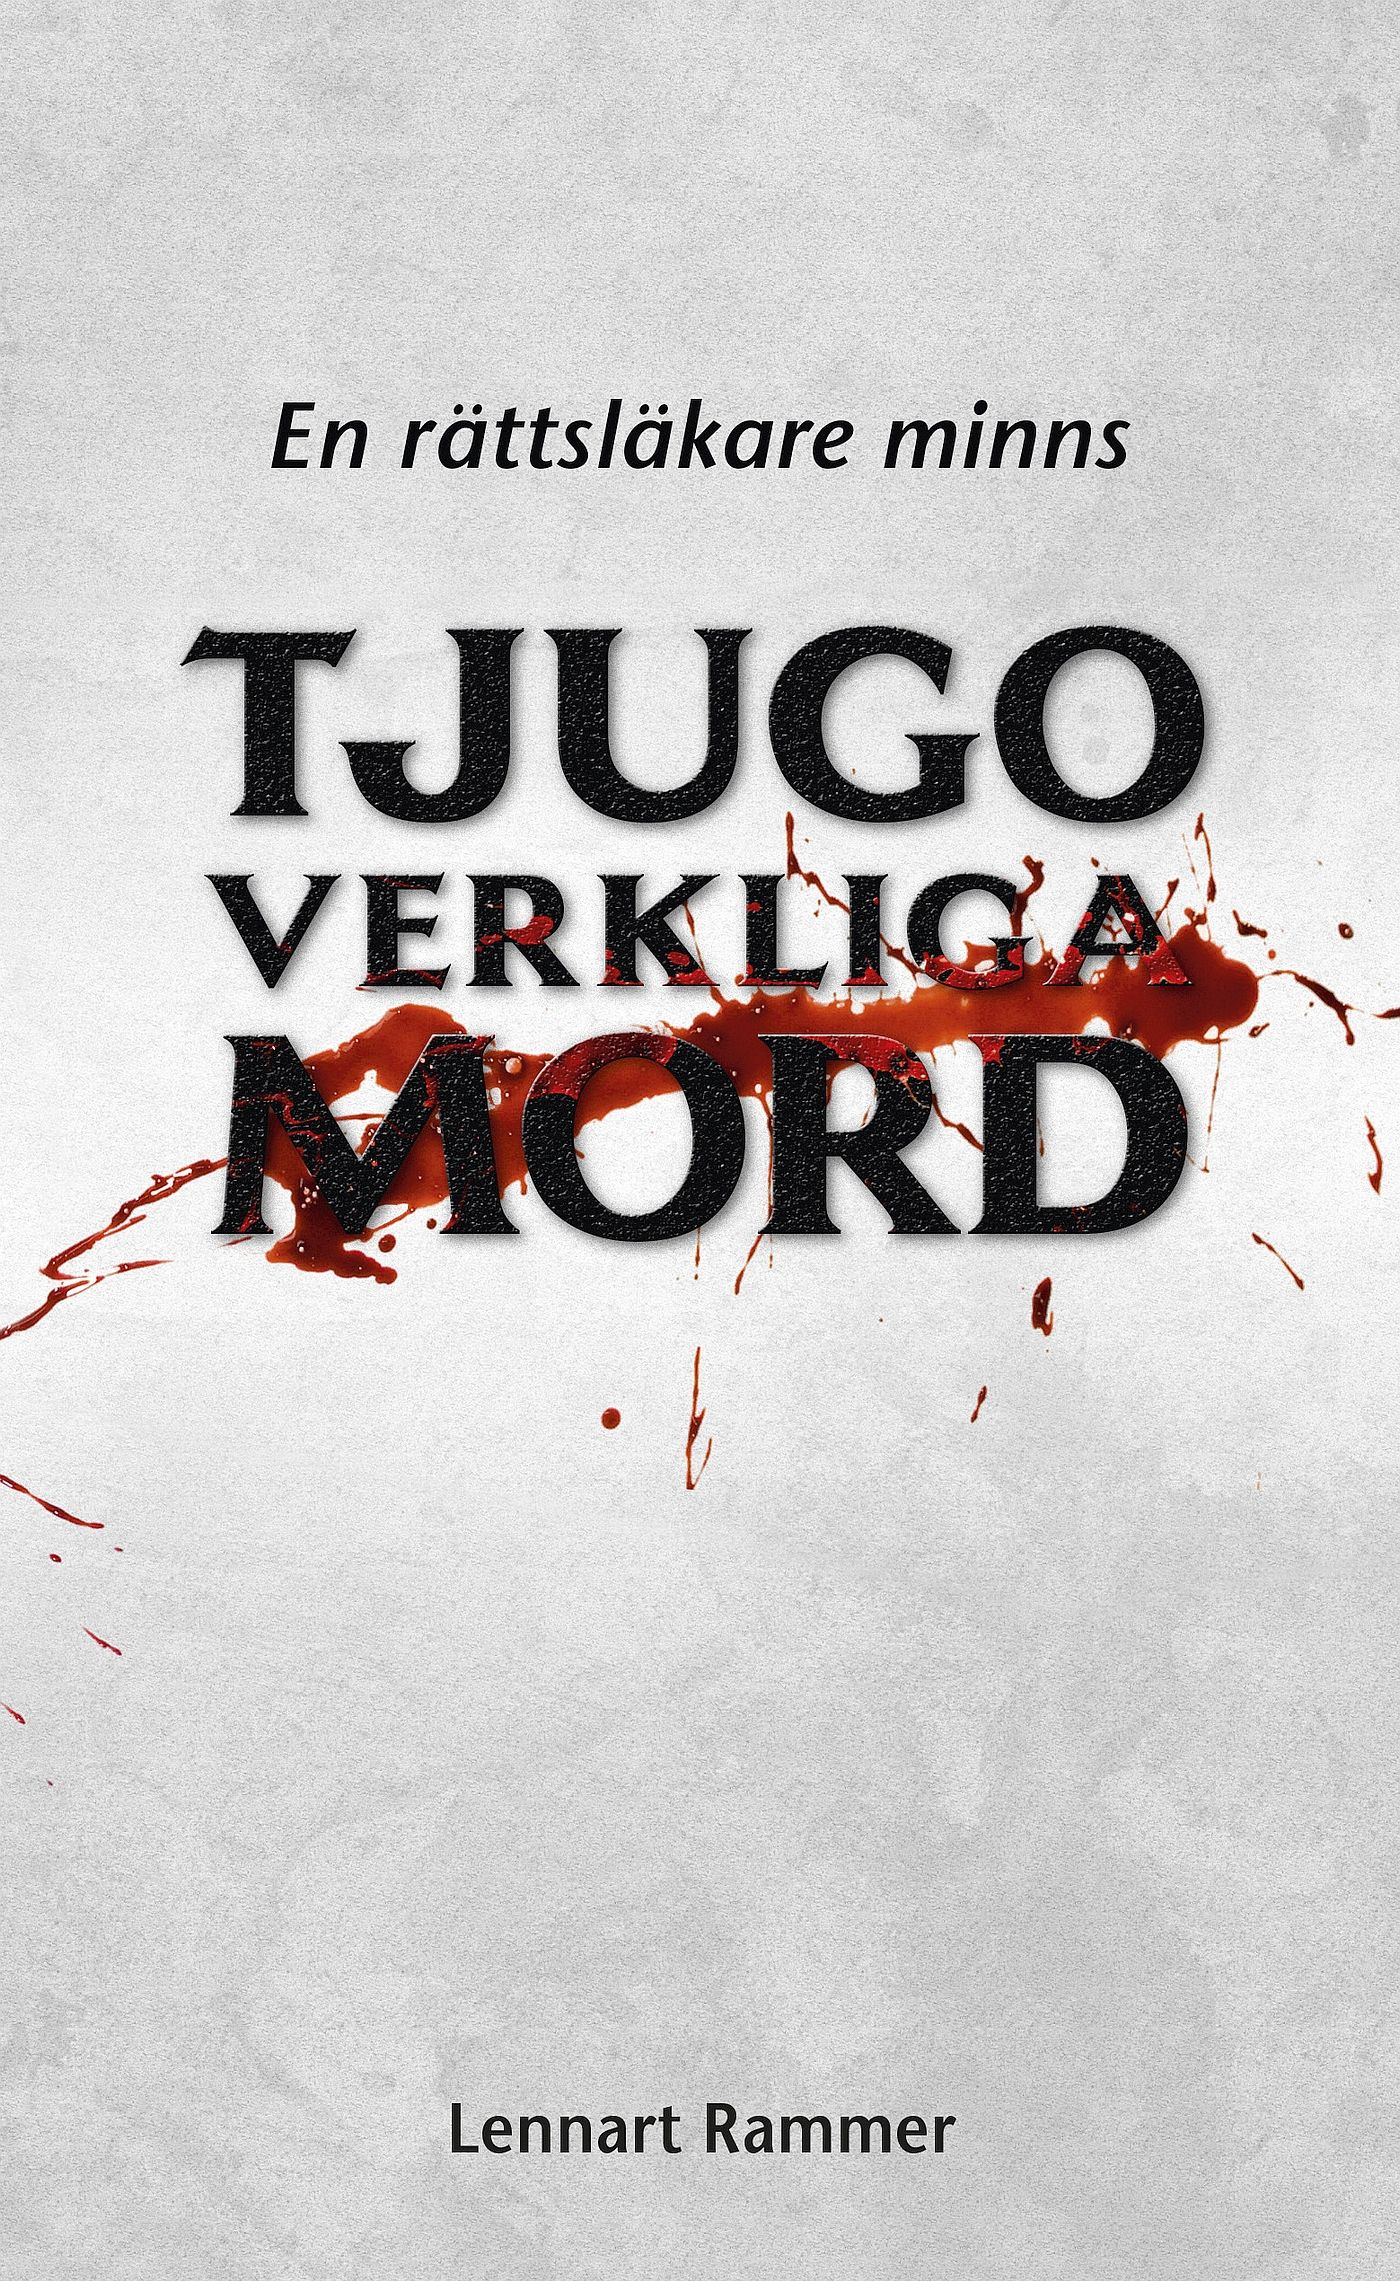 Tjugo verkliga mord - En rättsläkare minns, eBook by Lennart Rammer